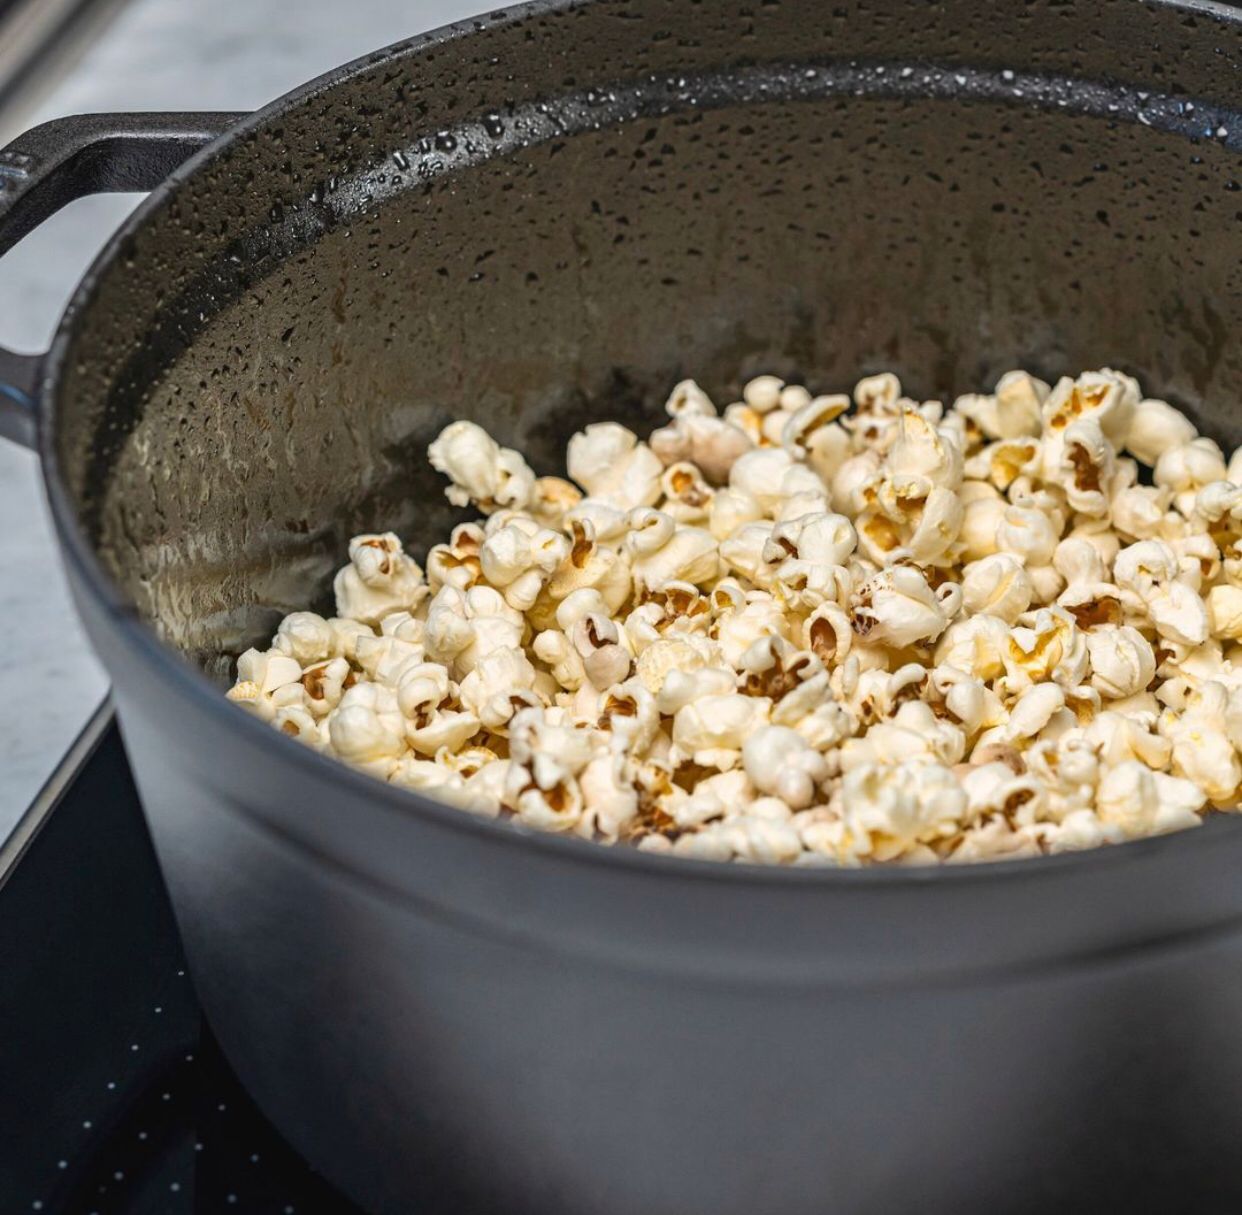 Masuk Jadi Makanan Favorit, Apakah Popcorn Aman Bagi Kesehatan? (sumber gambar: akun Instagram @staub_ca)